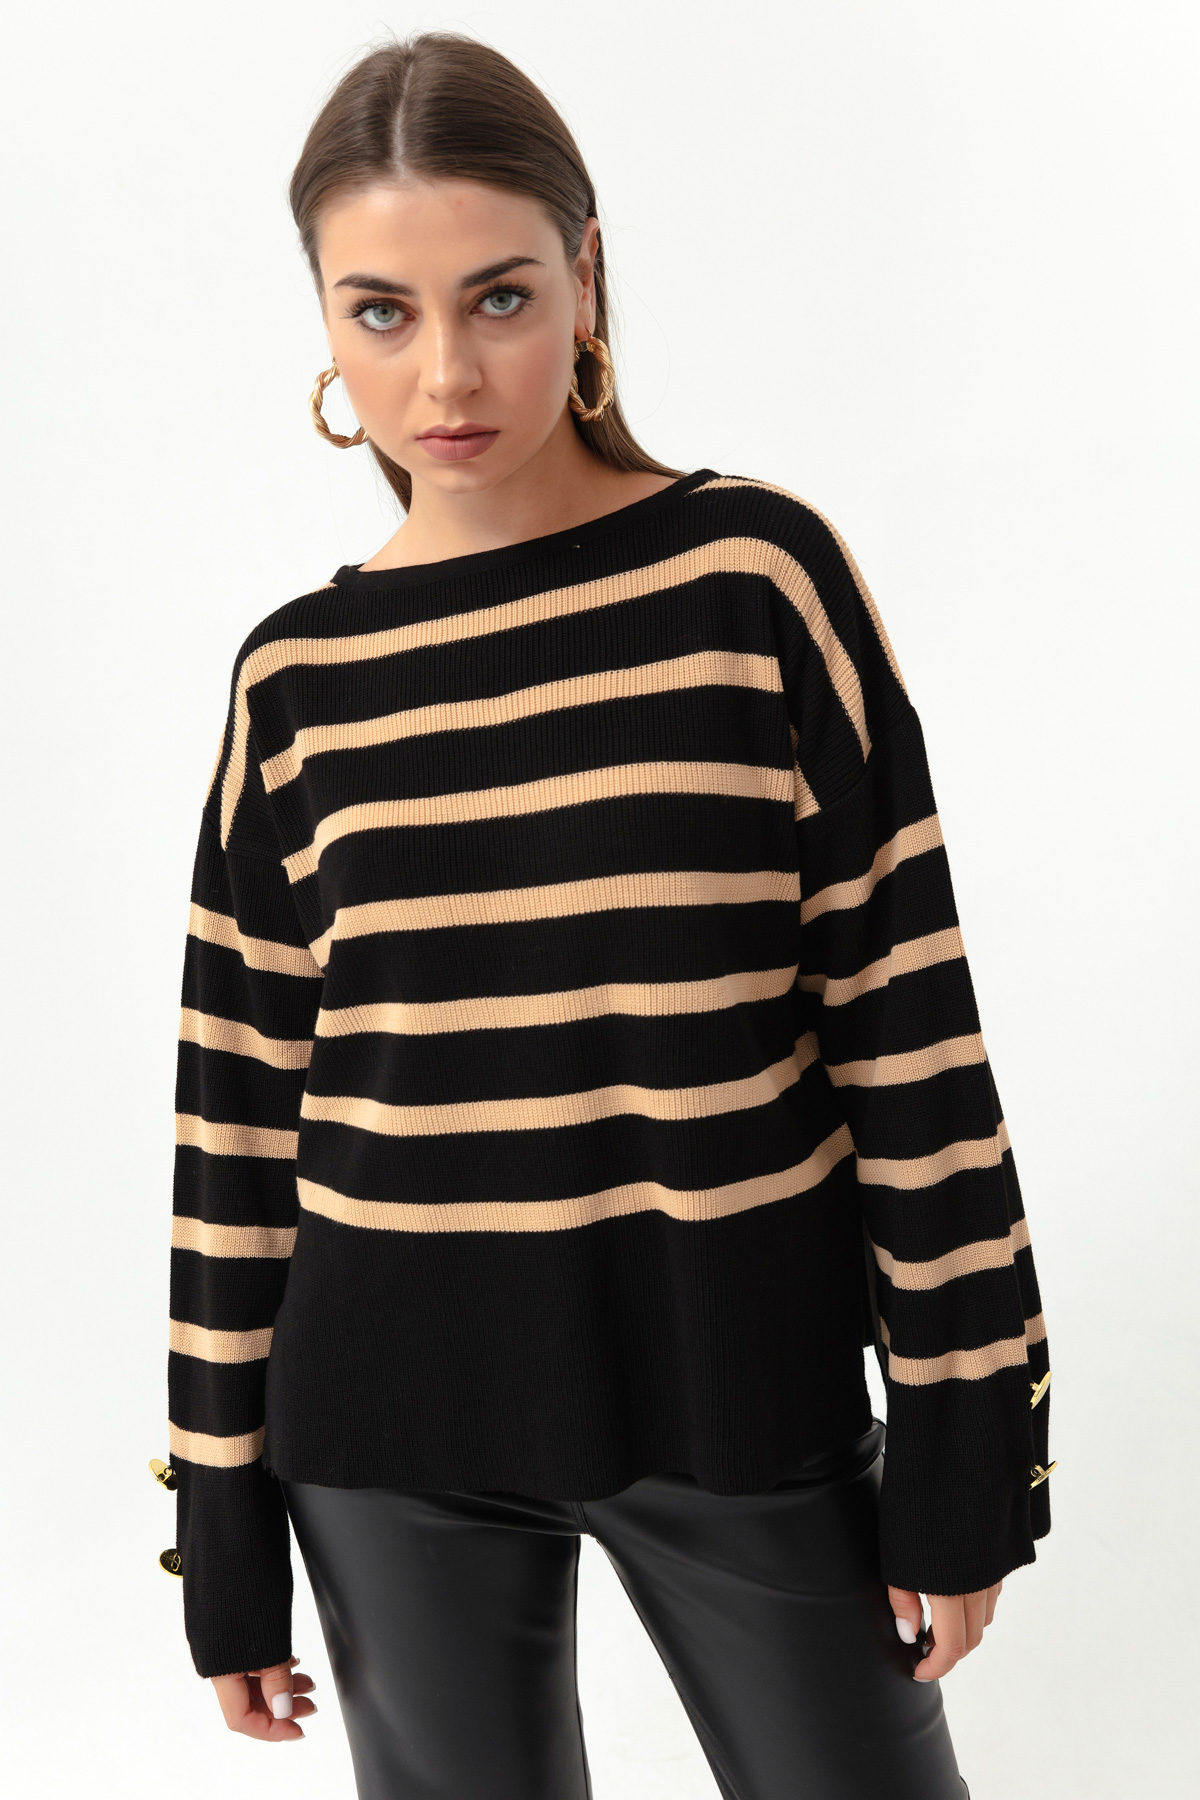 Women's Tan Boat Neck Striped Knitwear Sweater